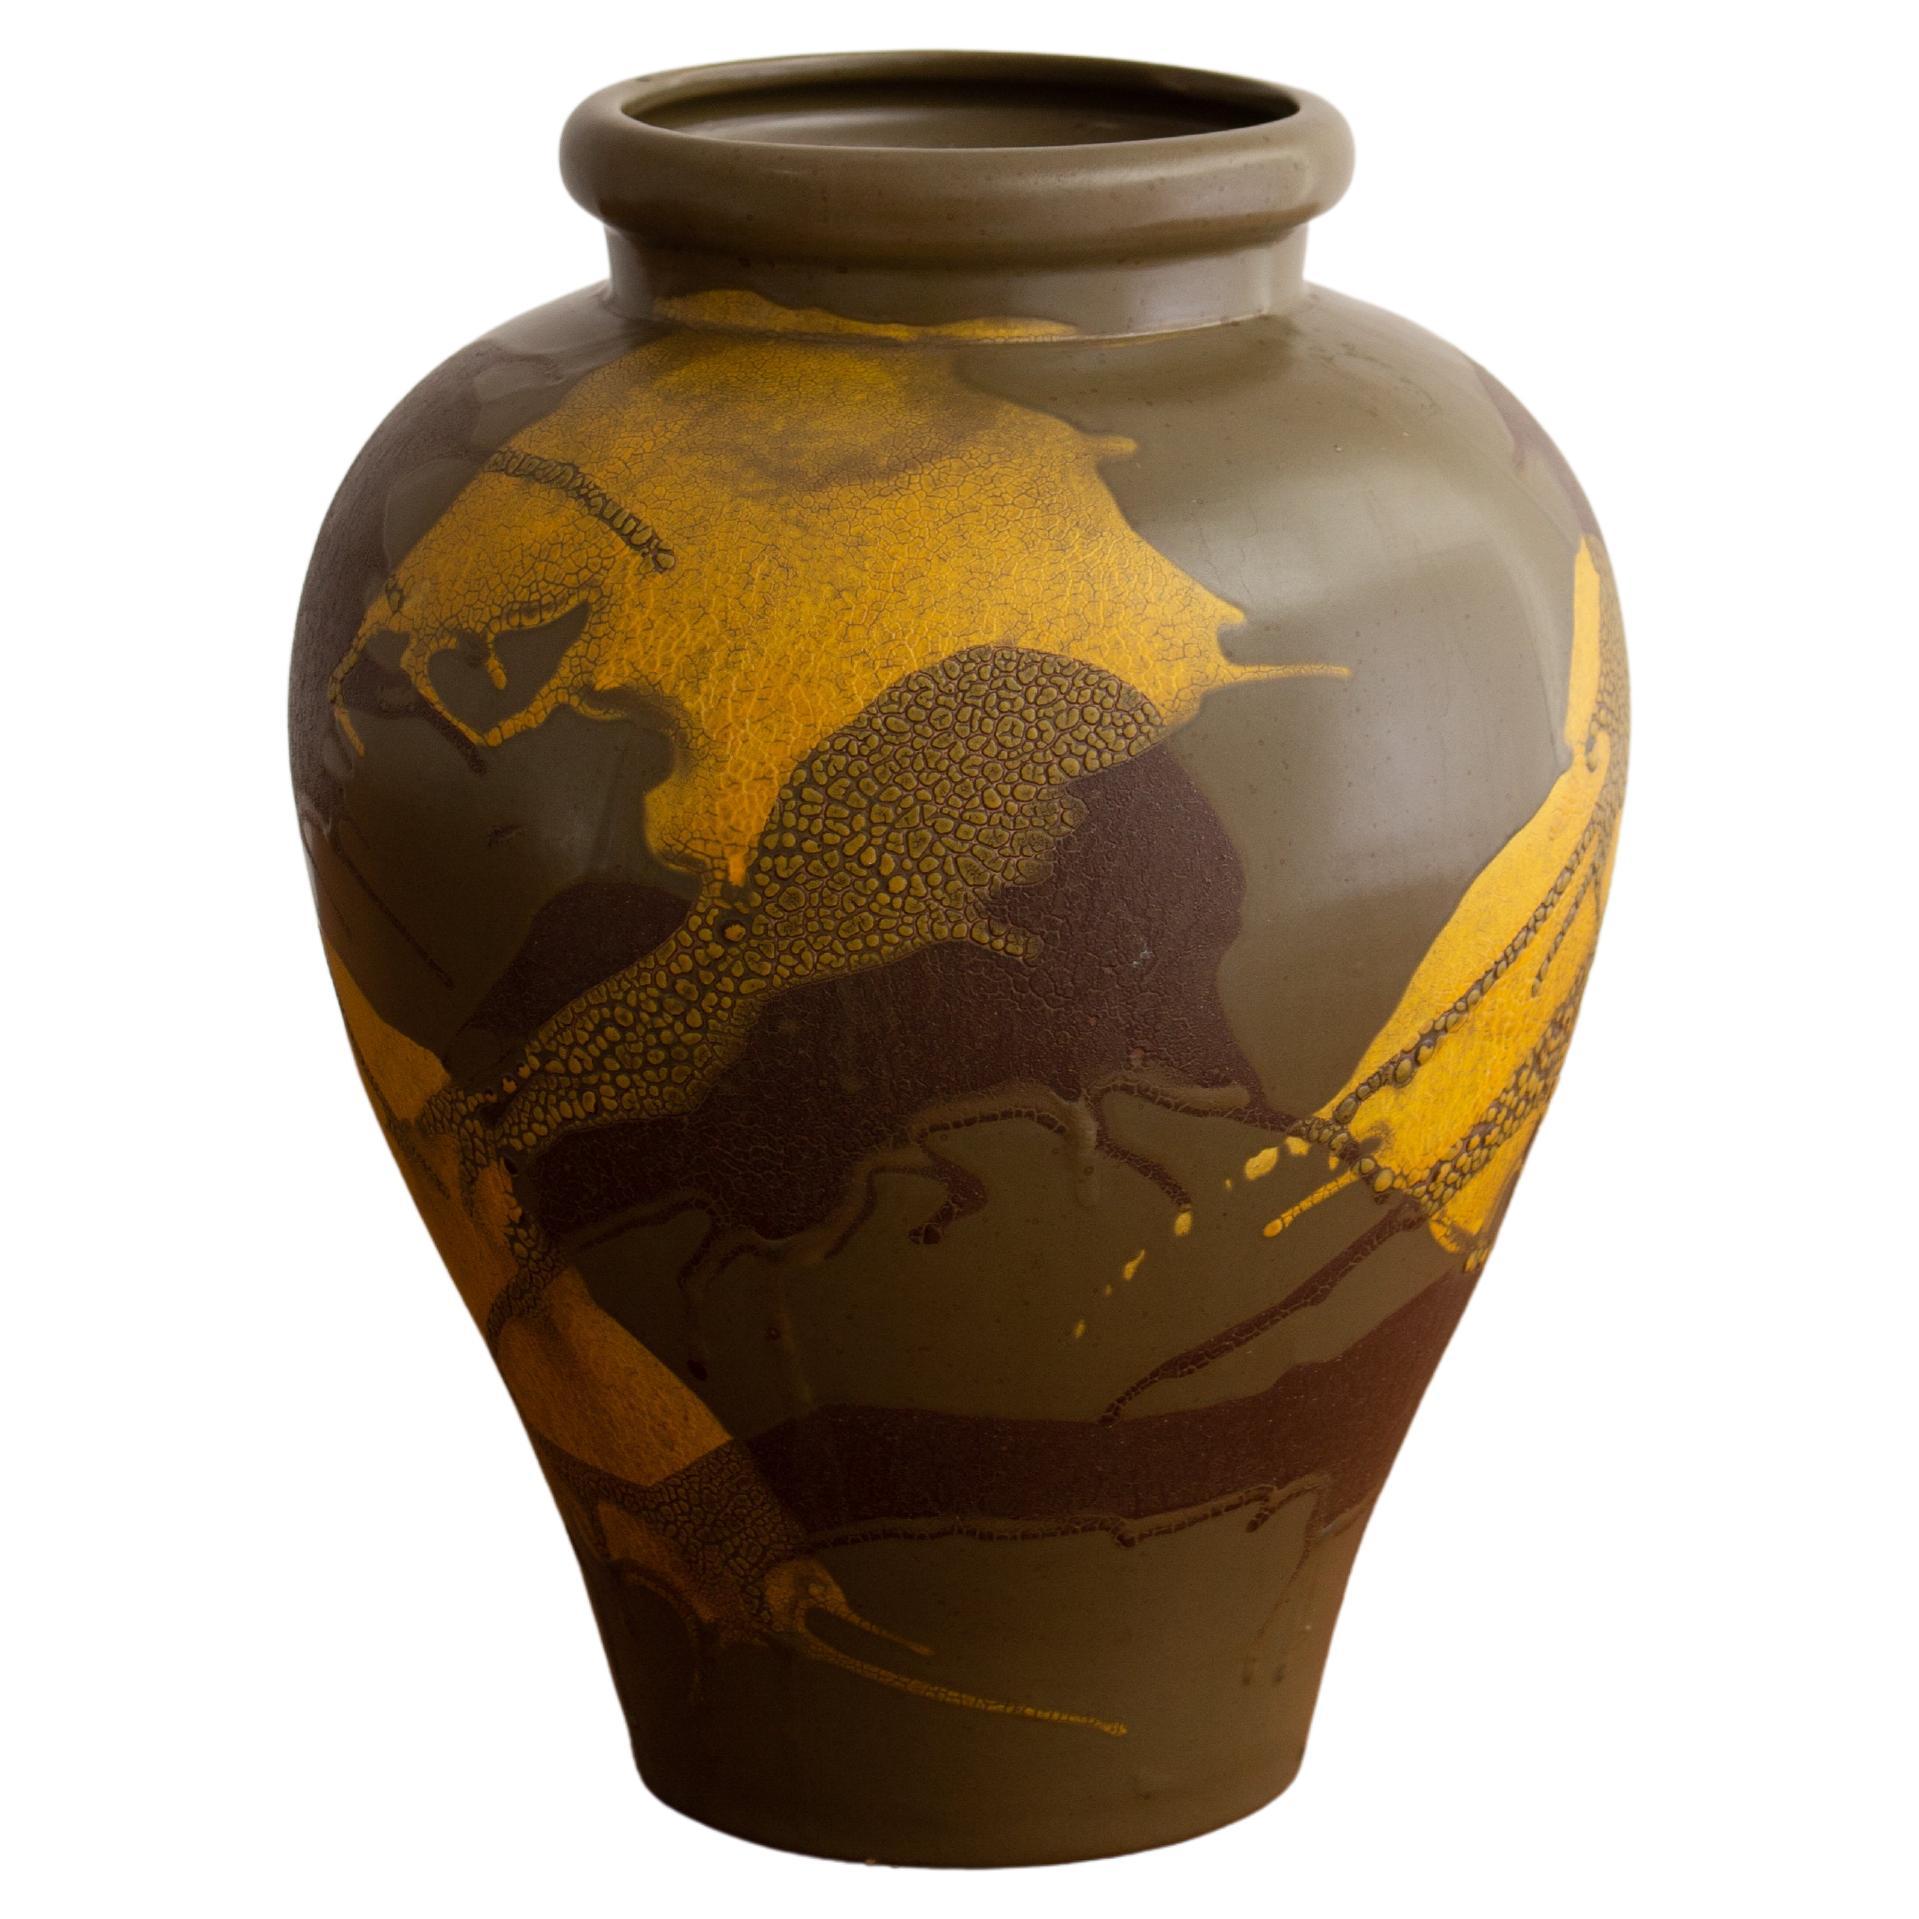 Royal Haeger Earth Wrap Urn Form Vase